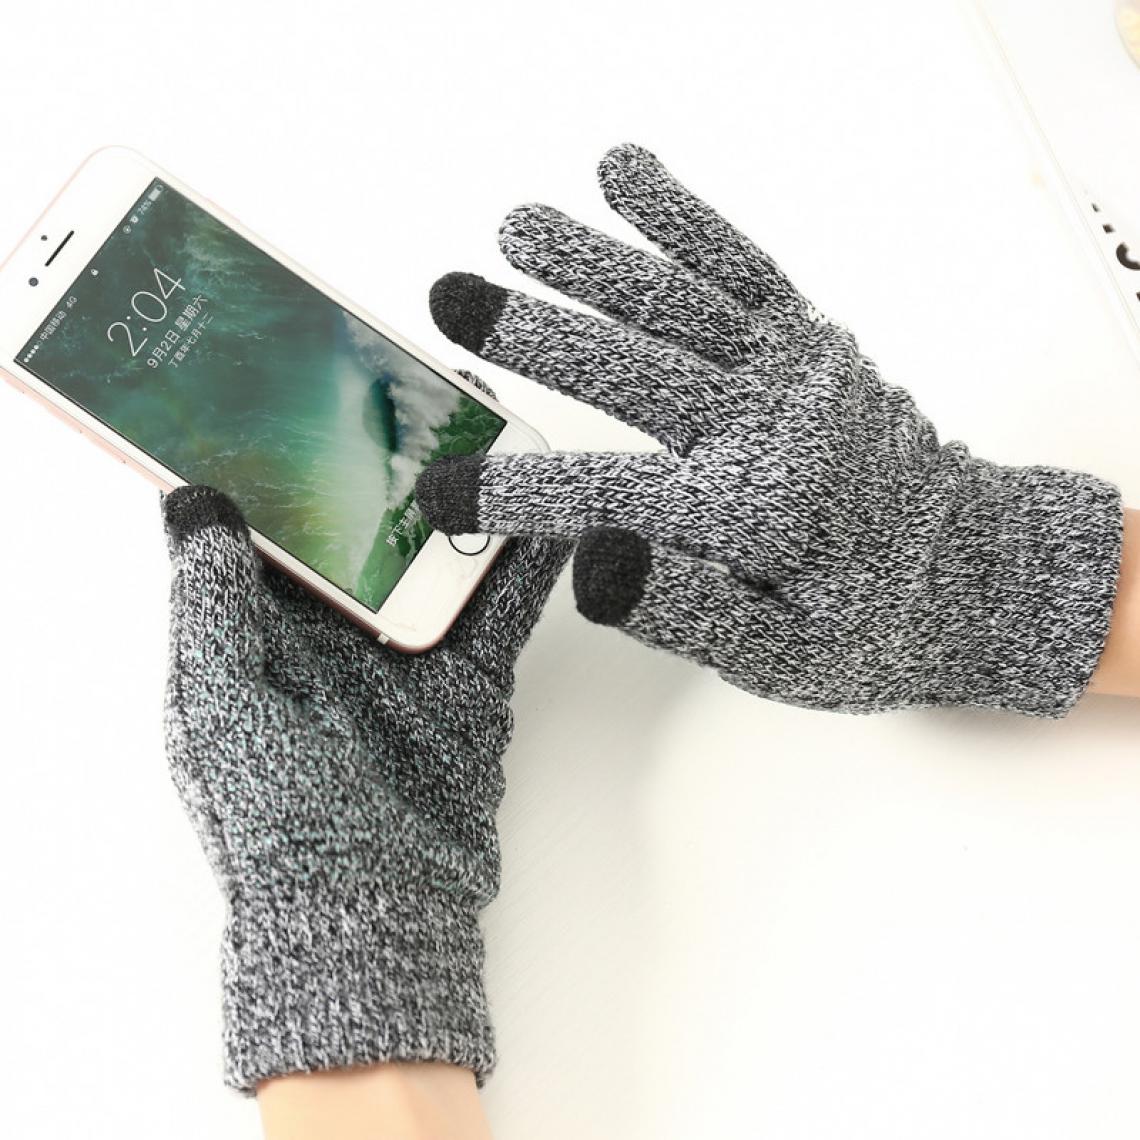 Shot - Gants Homme tactiles pour SAMSUNG Galaxy A5 2016 Smartphone Taille M 3 doigts Hiver (GRIS) - Autres accessoires smartphone